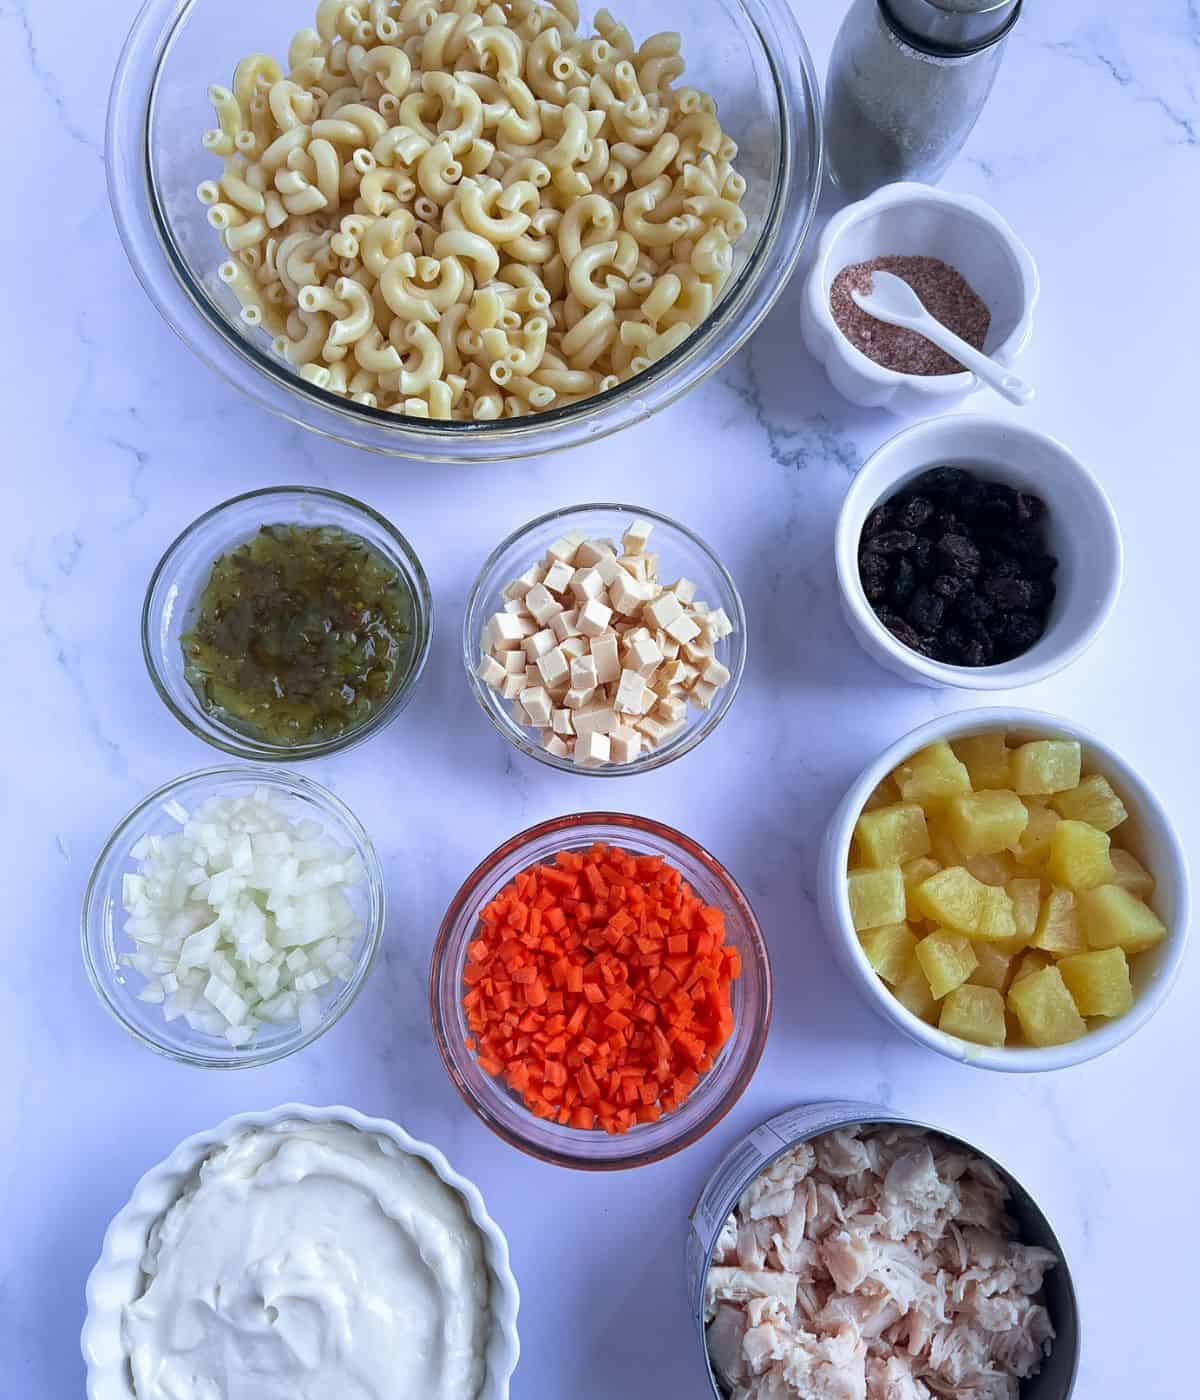 Ingredients for filipino macaroni salad.